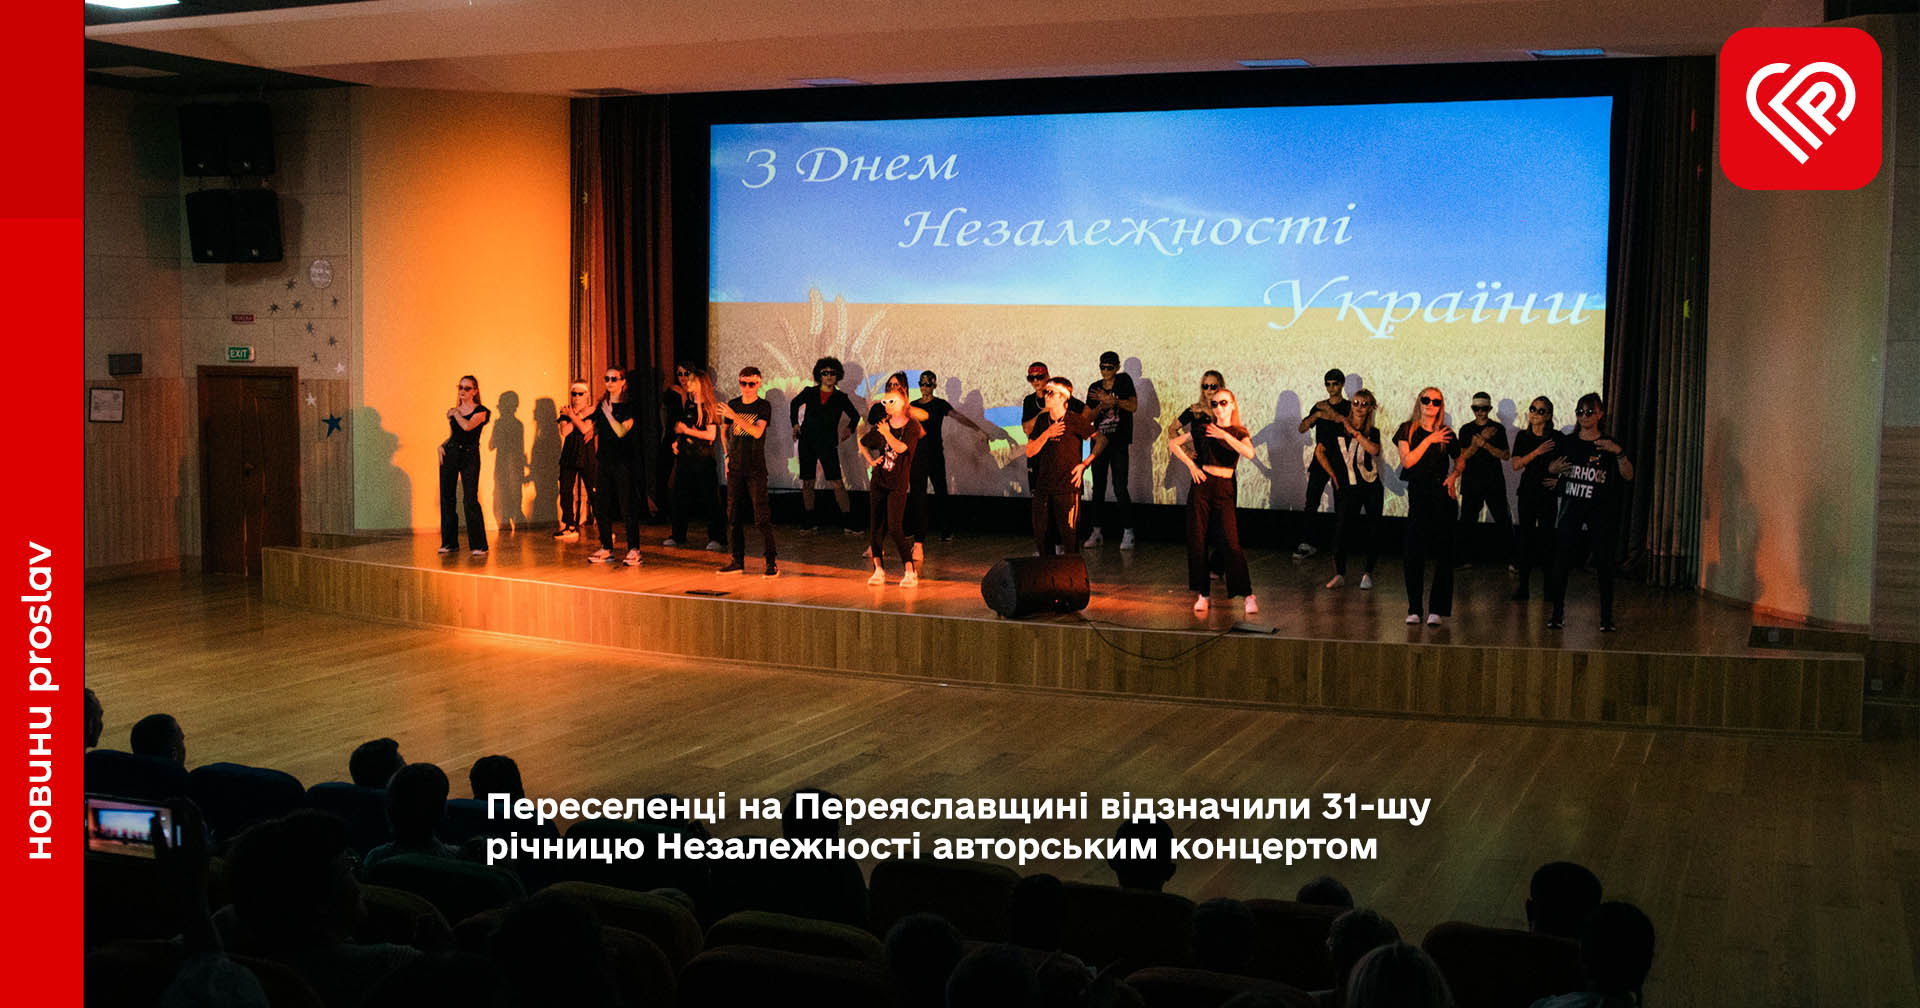 Переселенці на Переяславщині відзначили 31-шу річницю Незалежності авторським концертом (фото)